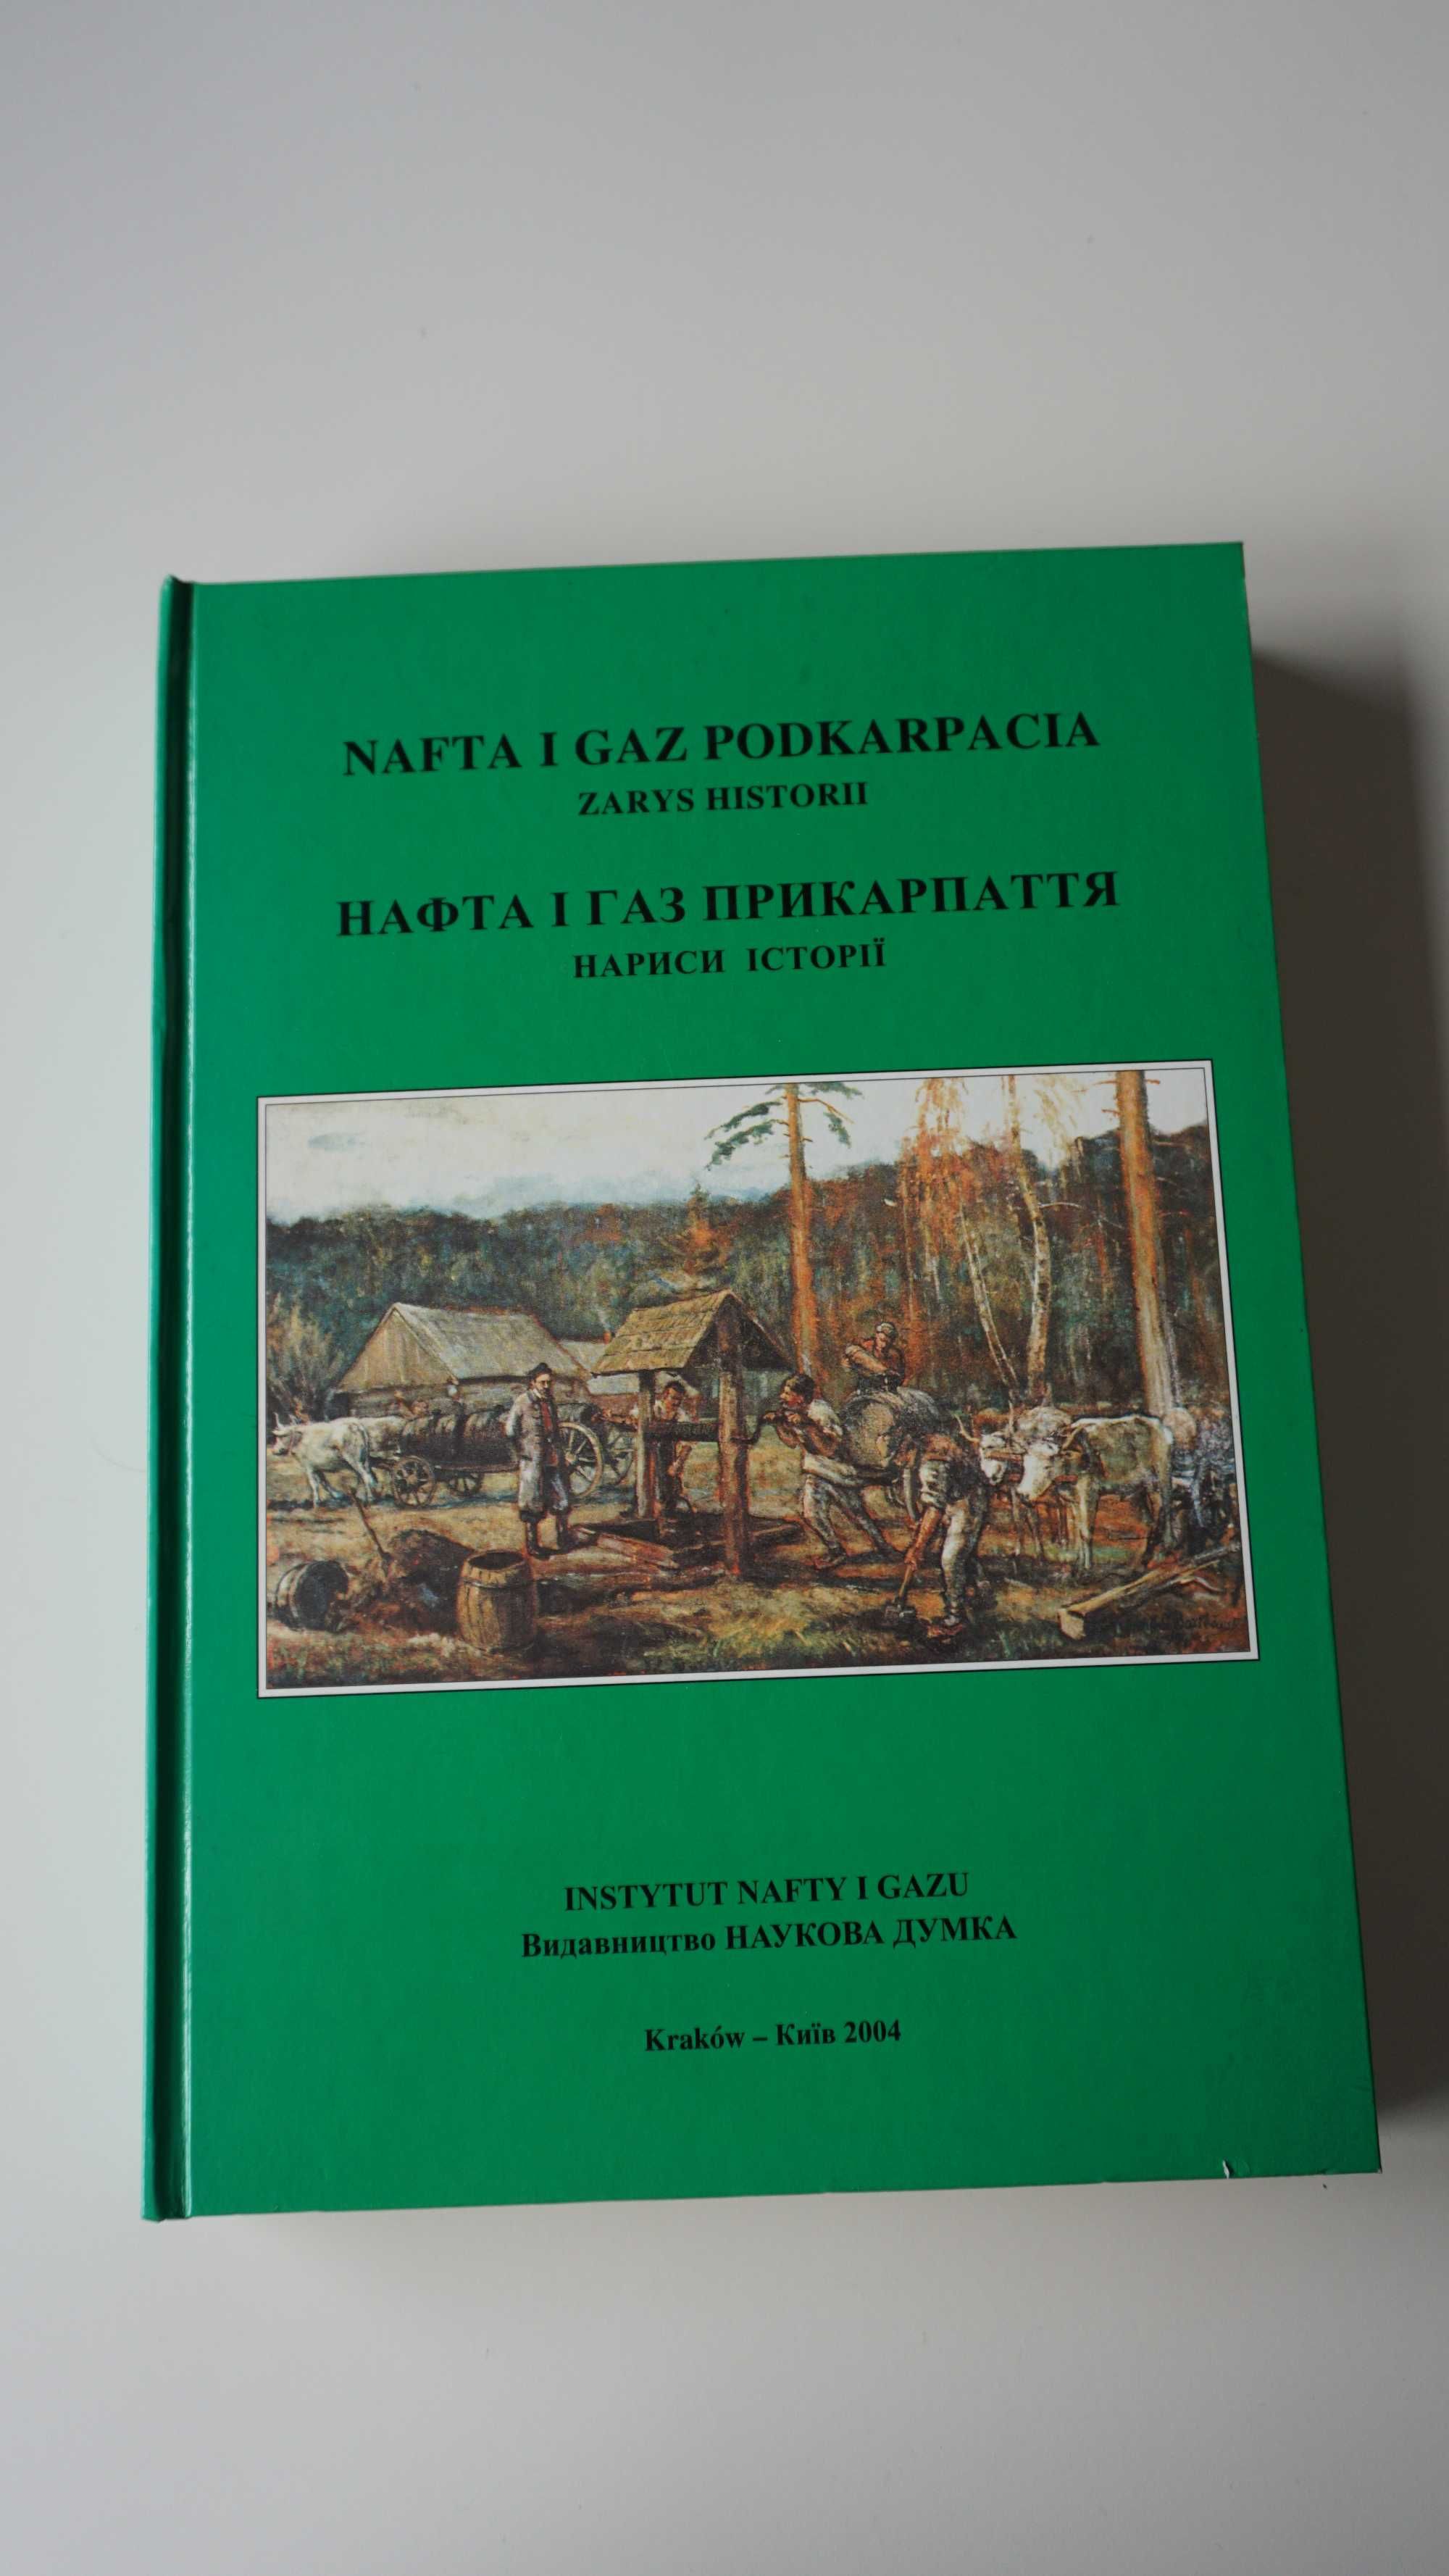 Książka - "Nafta i gaz Podkarpacia 2004 r. - zarys historii"